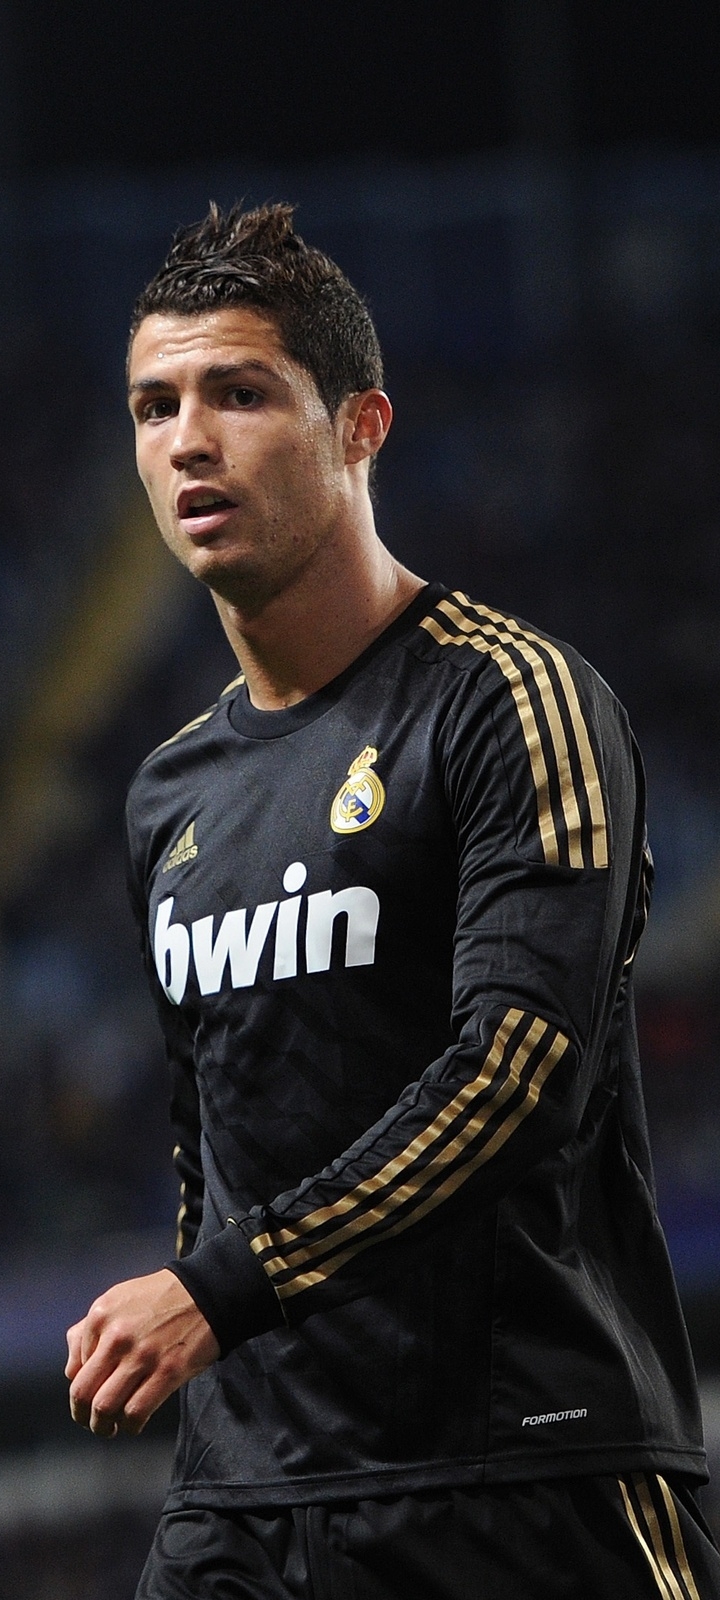 Cristiano Ronaldo Football Star